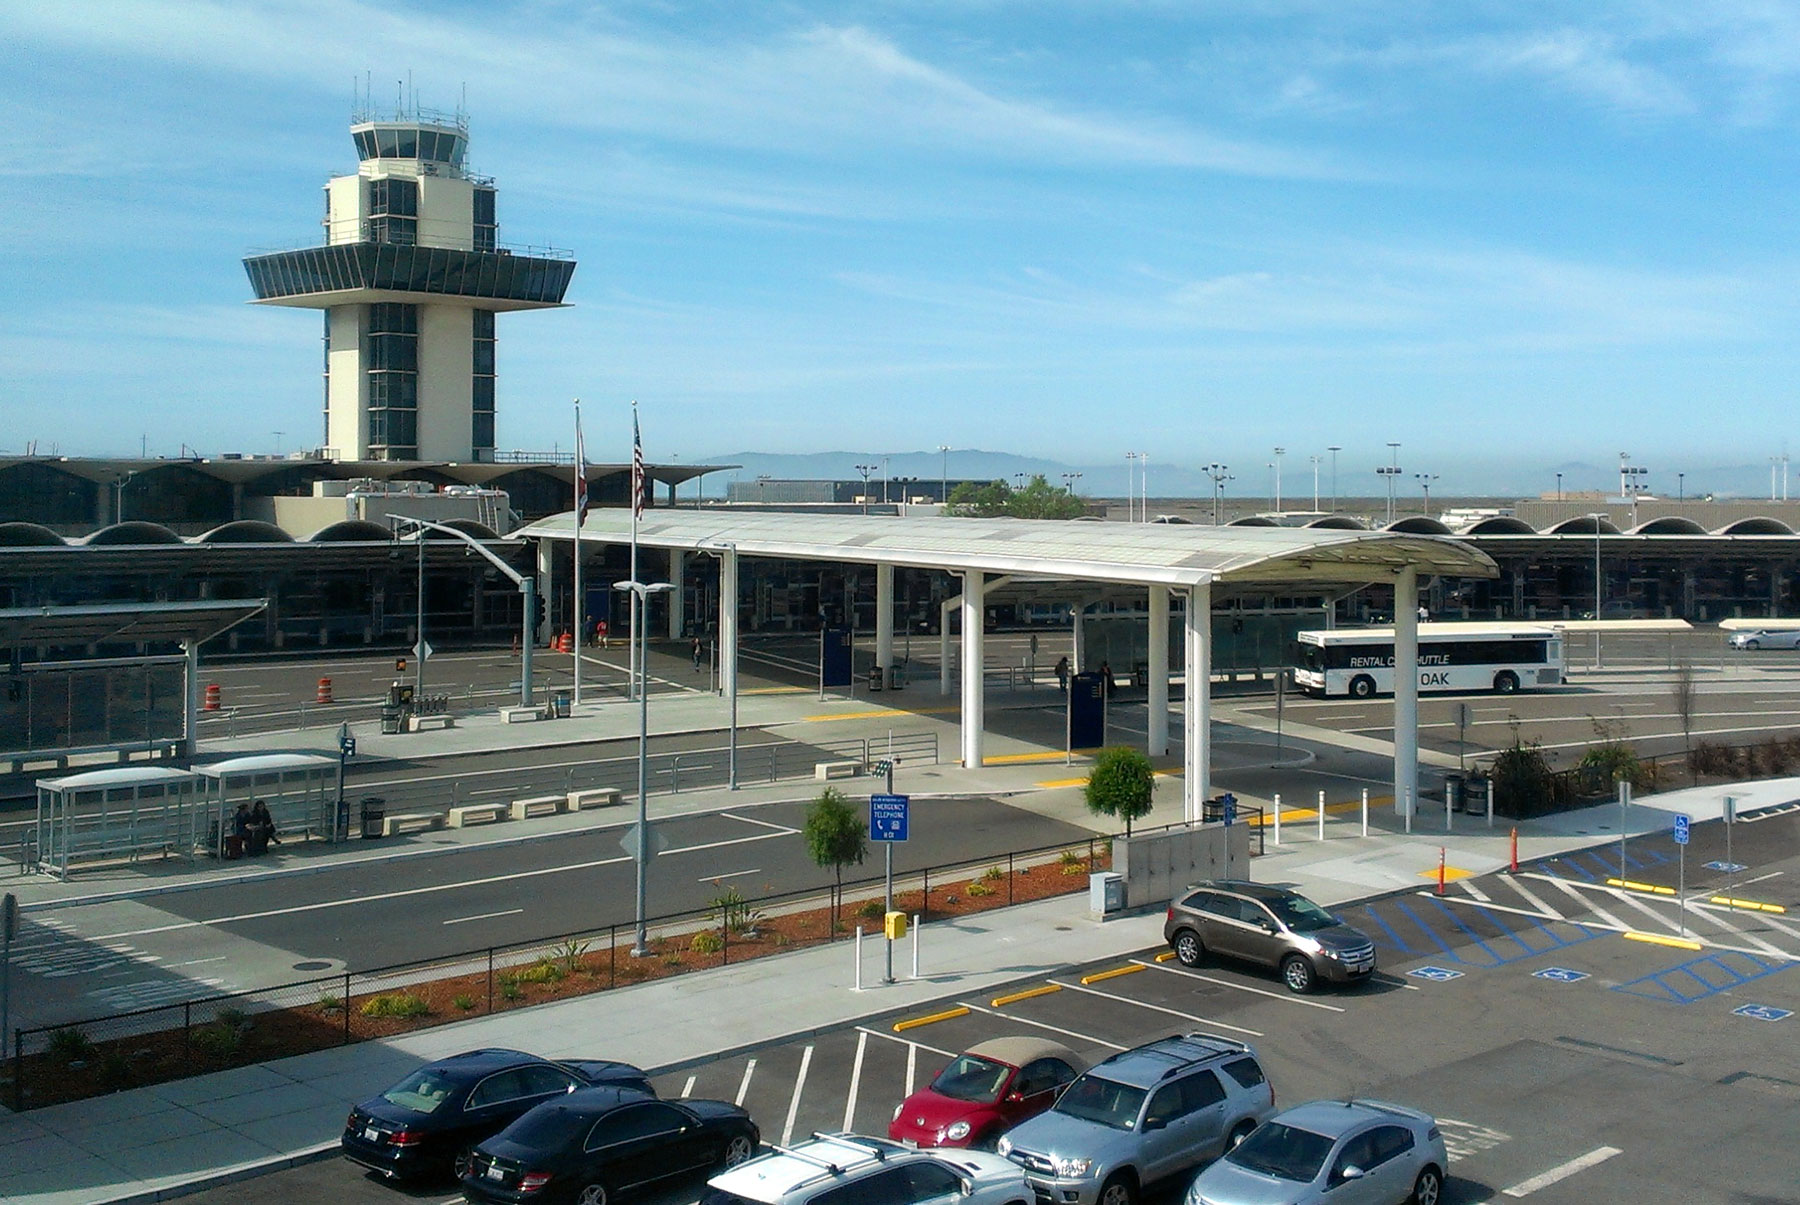 Oakland International Airport